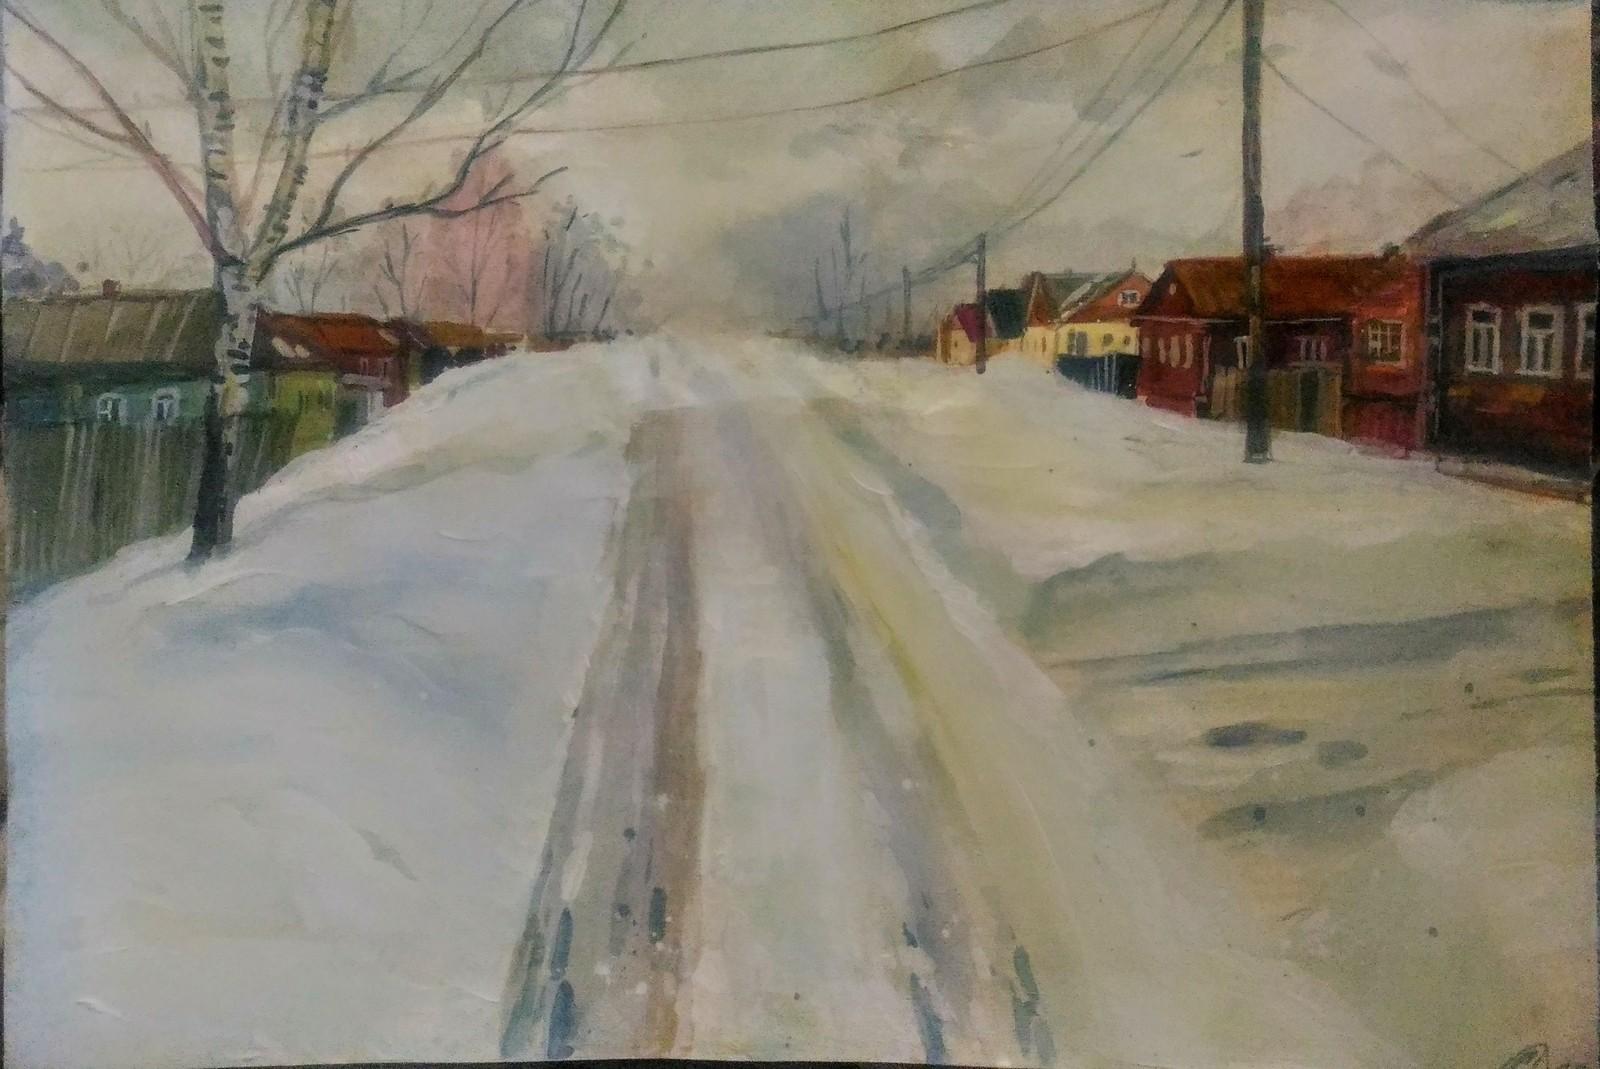 Pugach Painting - Быстрый этюд акрилом\" Прощание с зимой\" холст 30*40  #pugachpainting #этюдмаслом #зима #весна #кот #рыжийкот #оттепель | Facebook